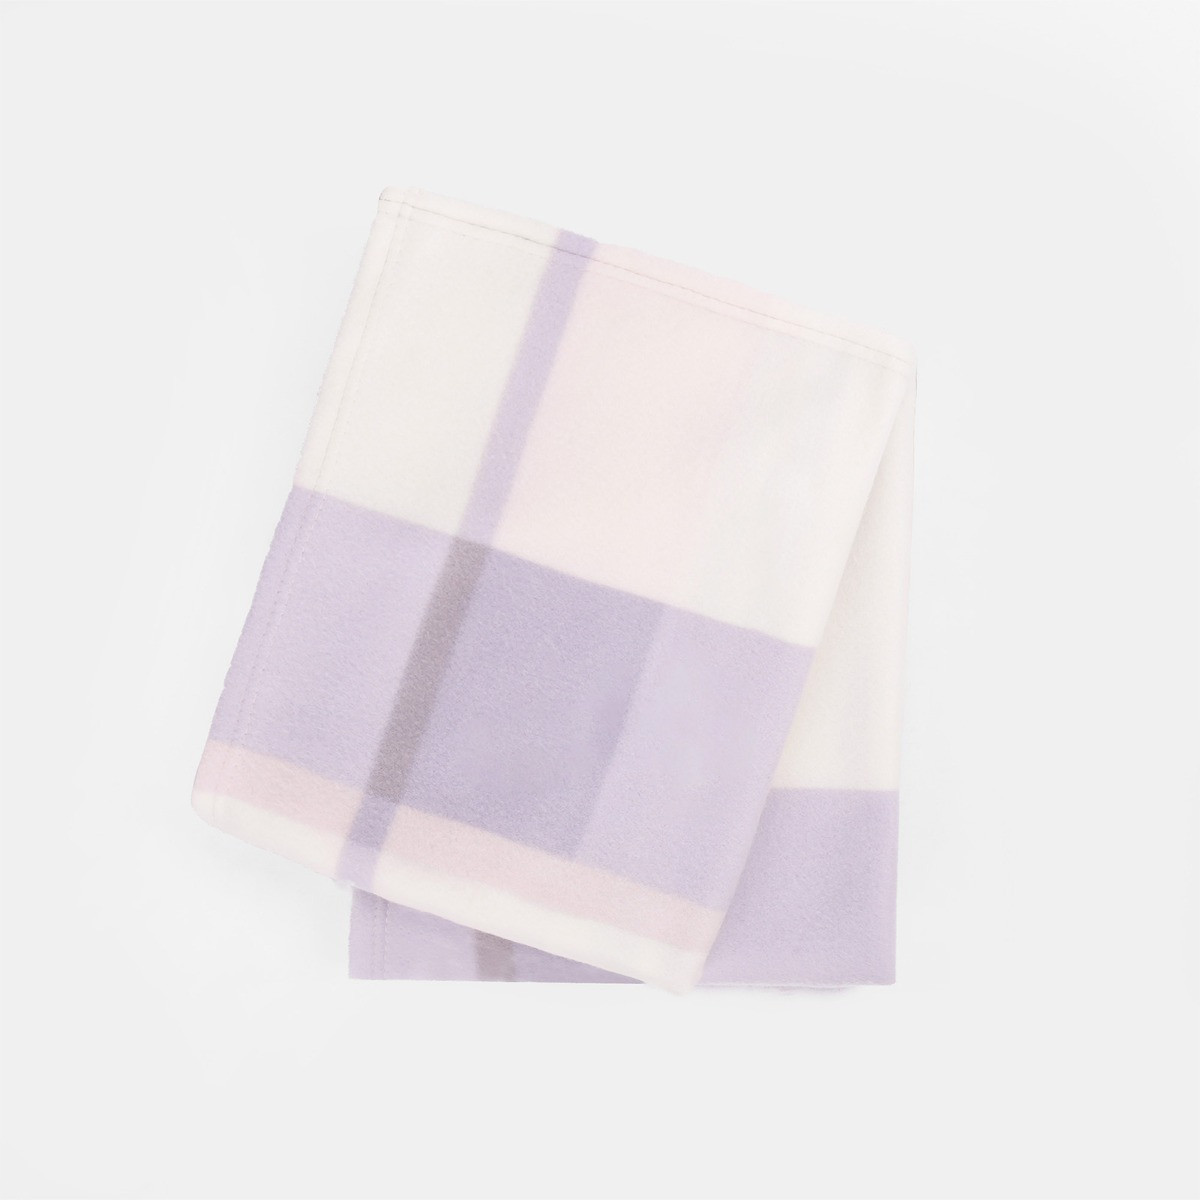 Dreamscene Tartan Check Fleece Throw, Cream Blue Lilac - 120 x 150 cm>